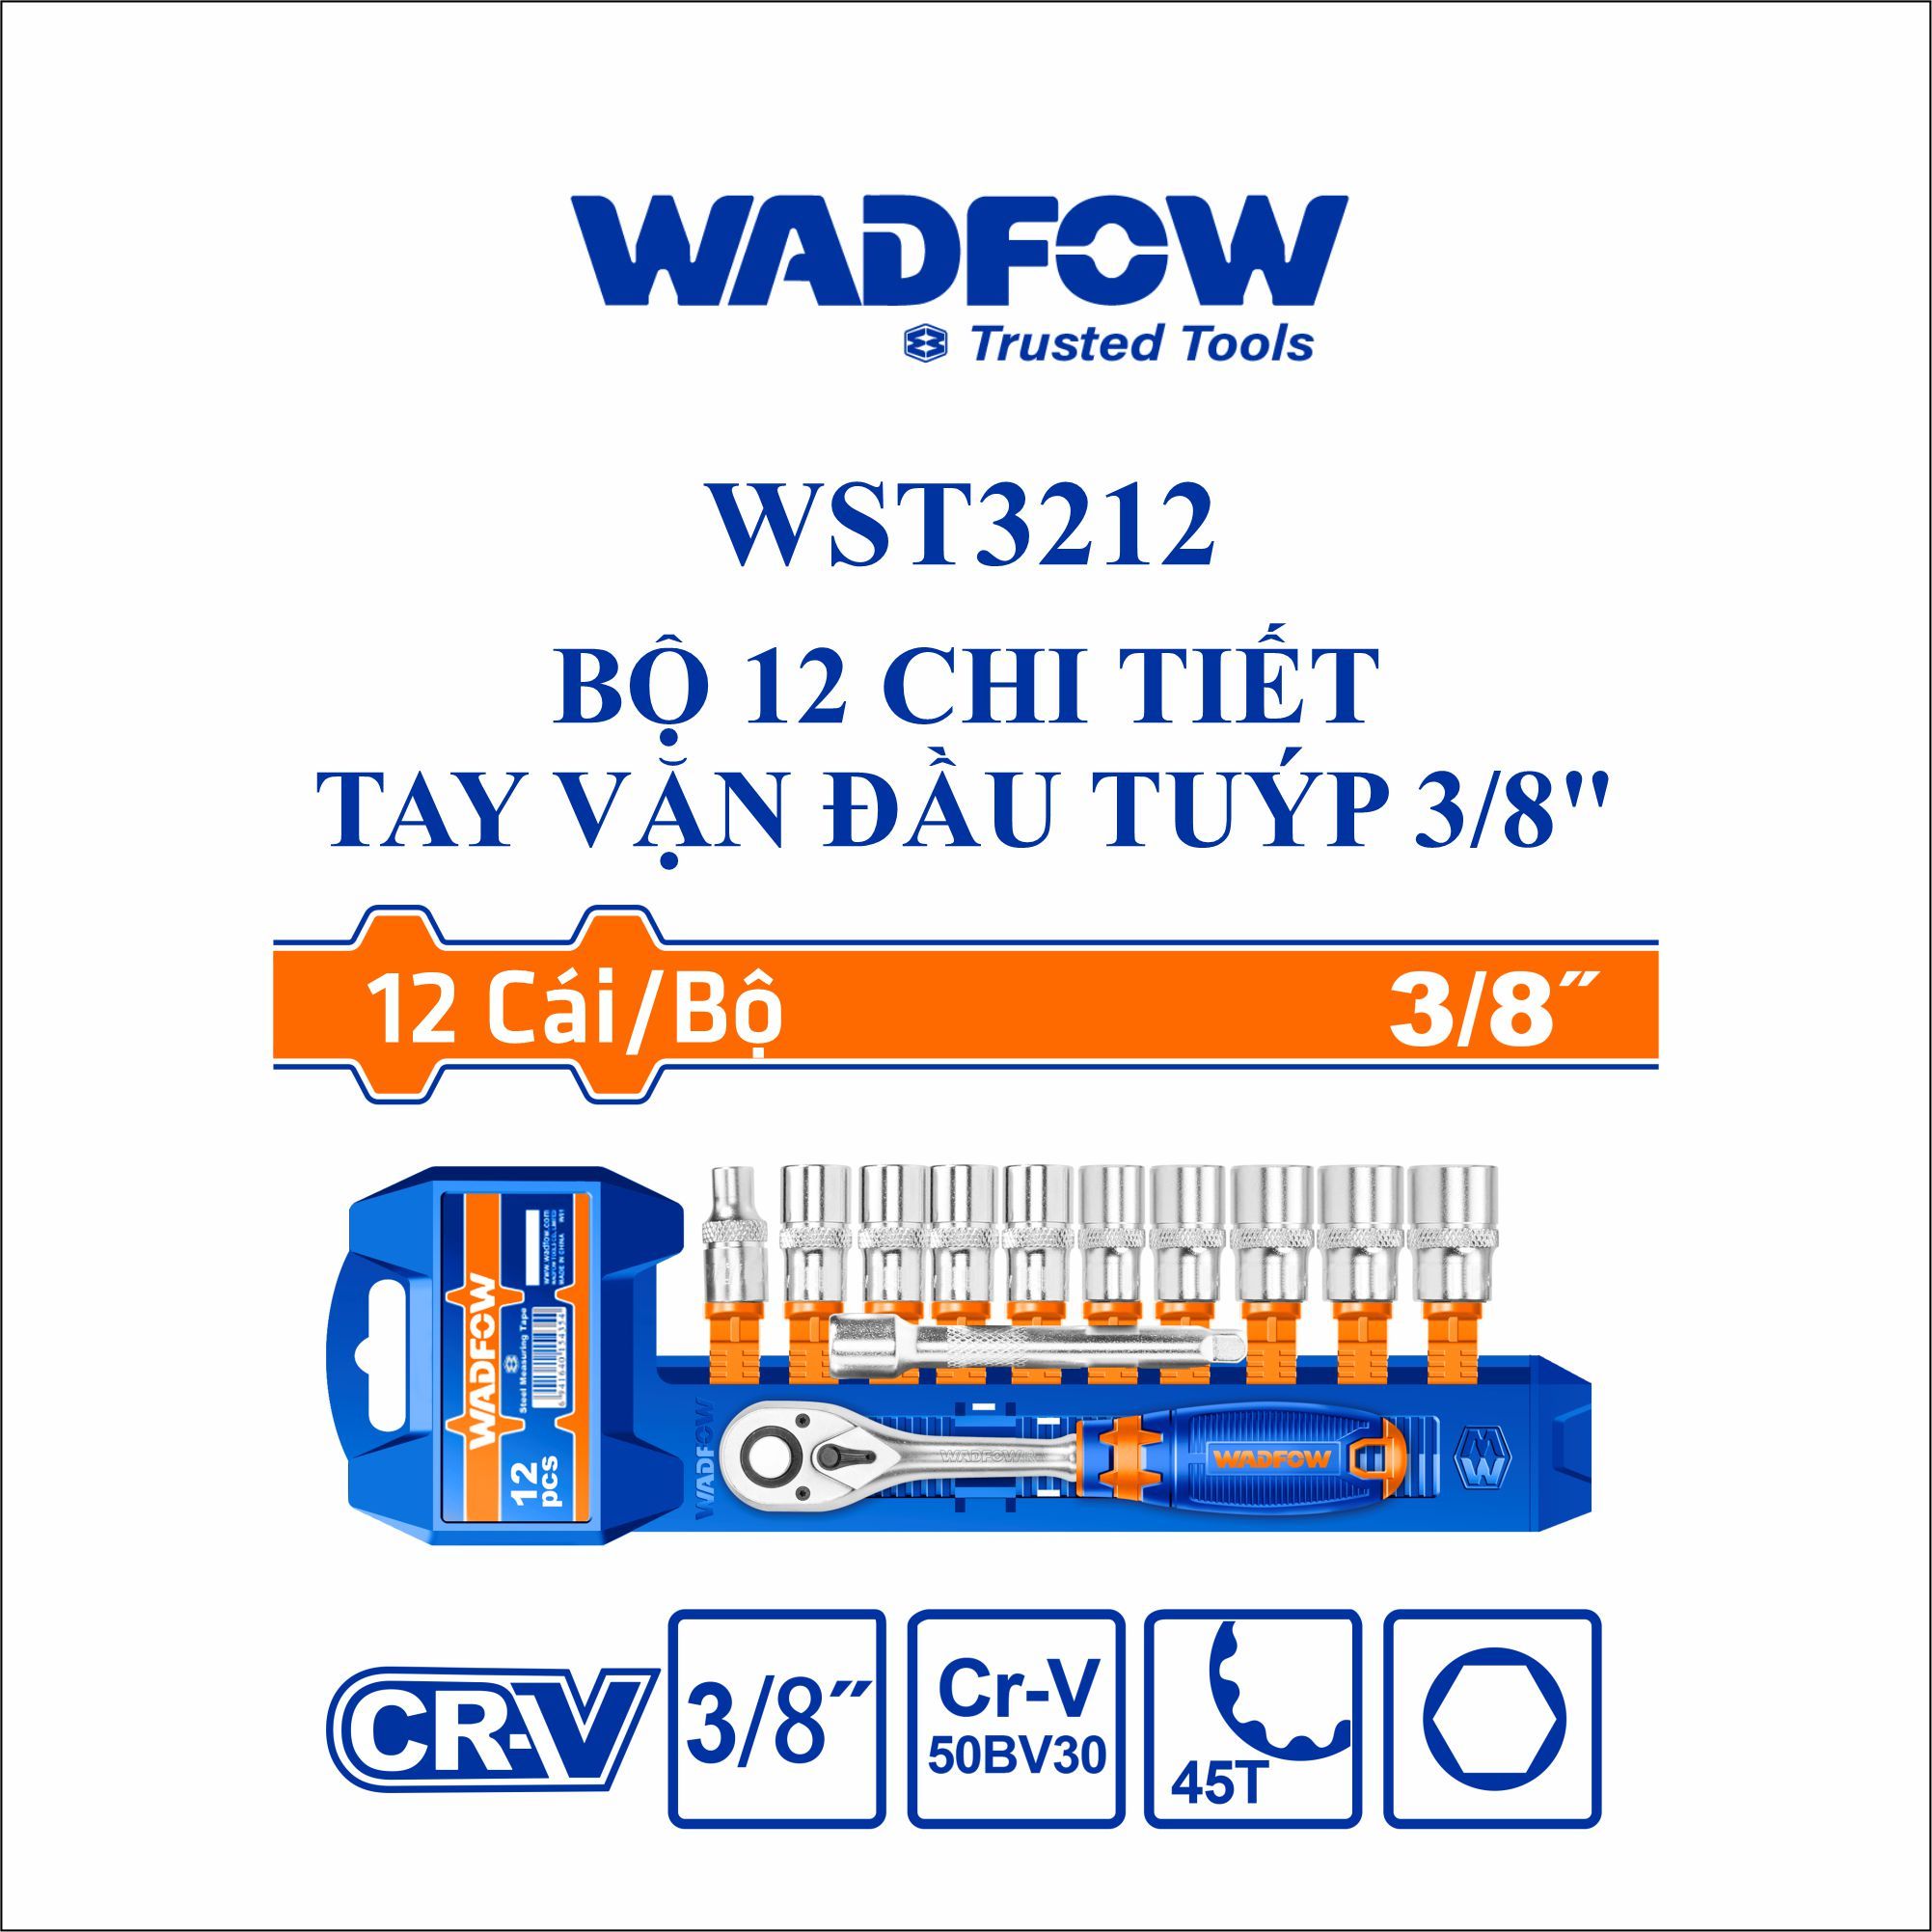  Bộ 12 chi tiết tay vặn đầu tuýp 3/8 Inch  WADFOW WST3212 